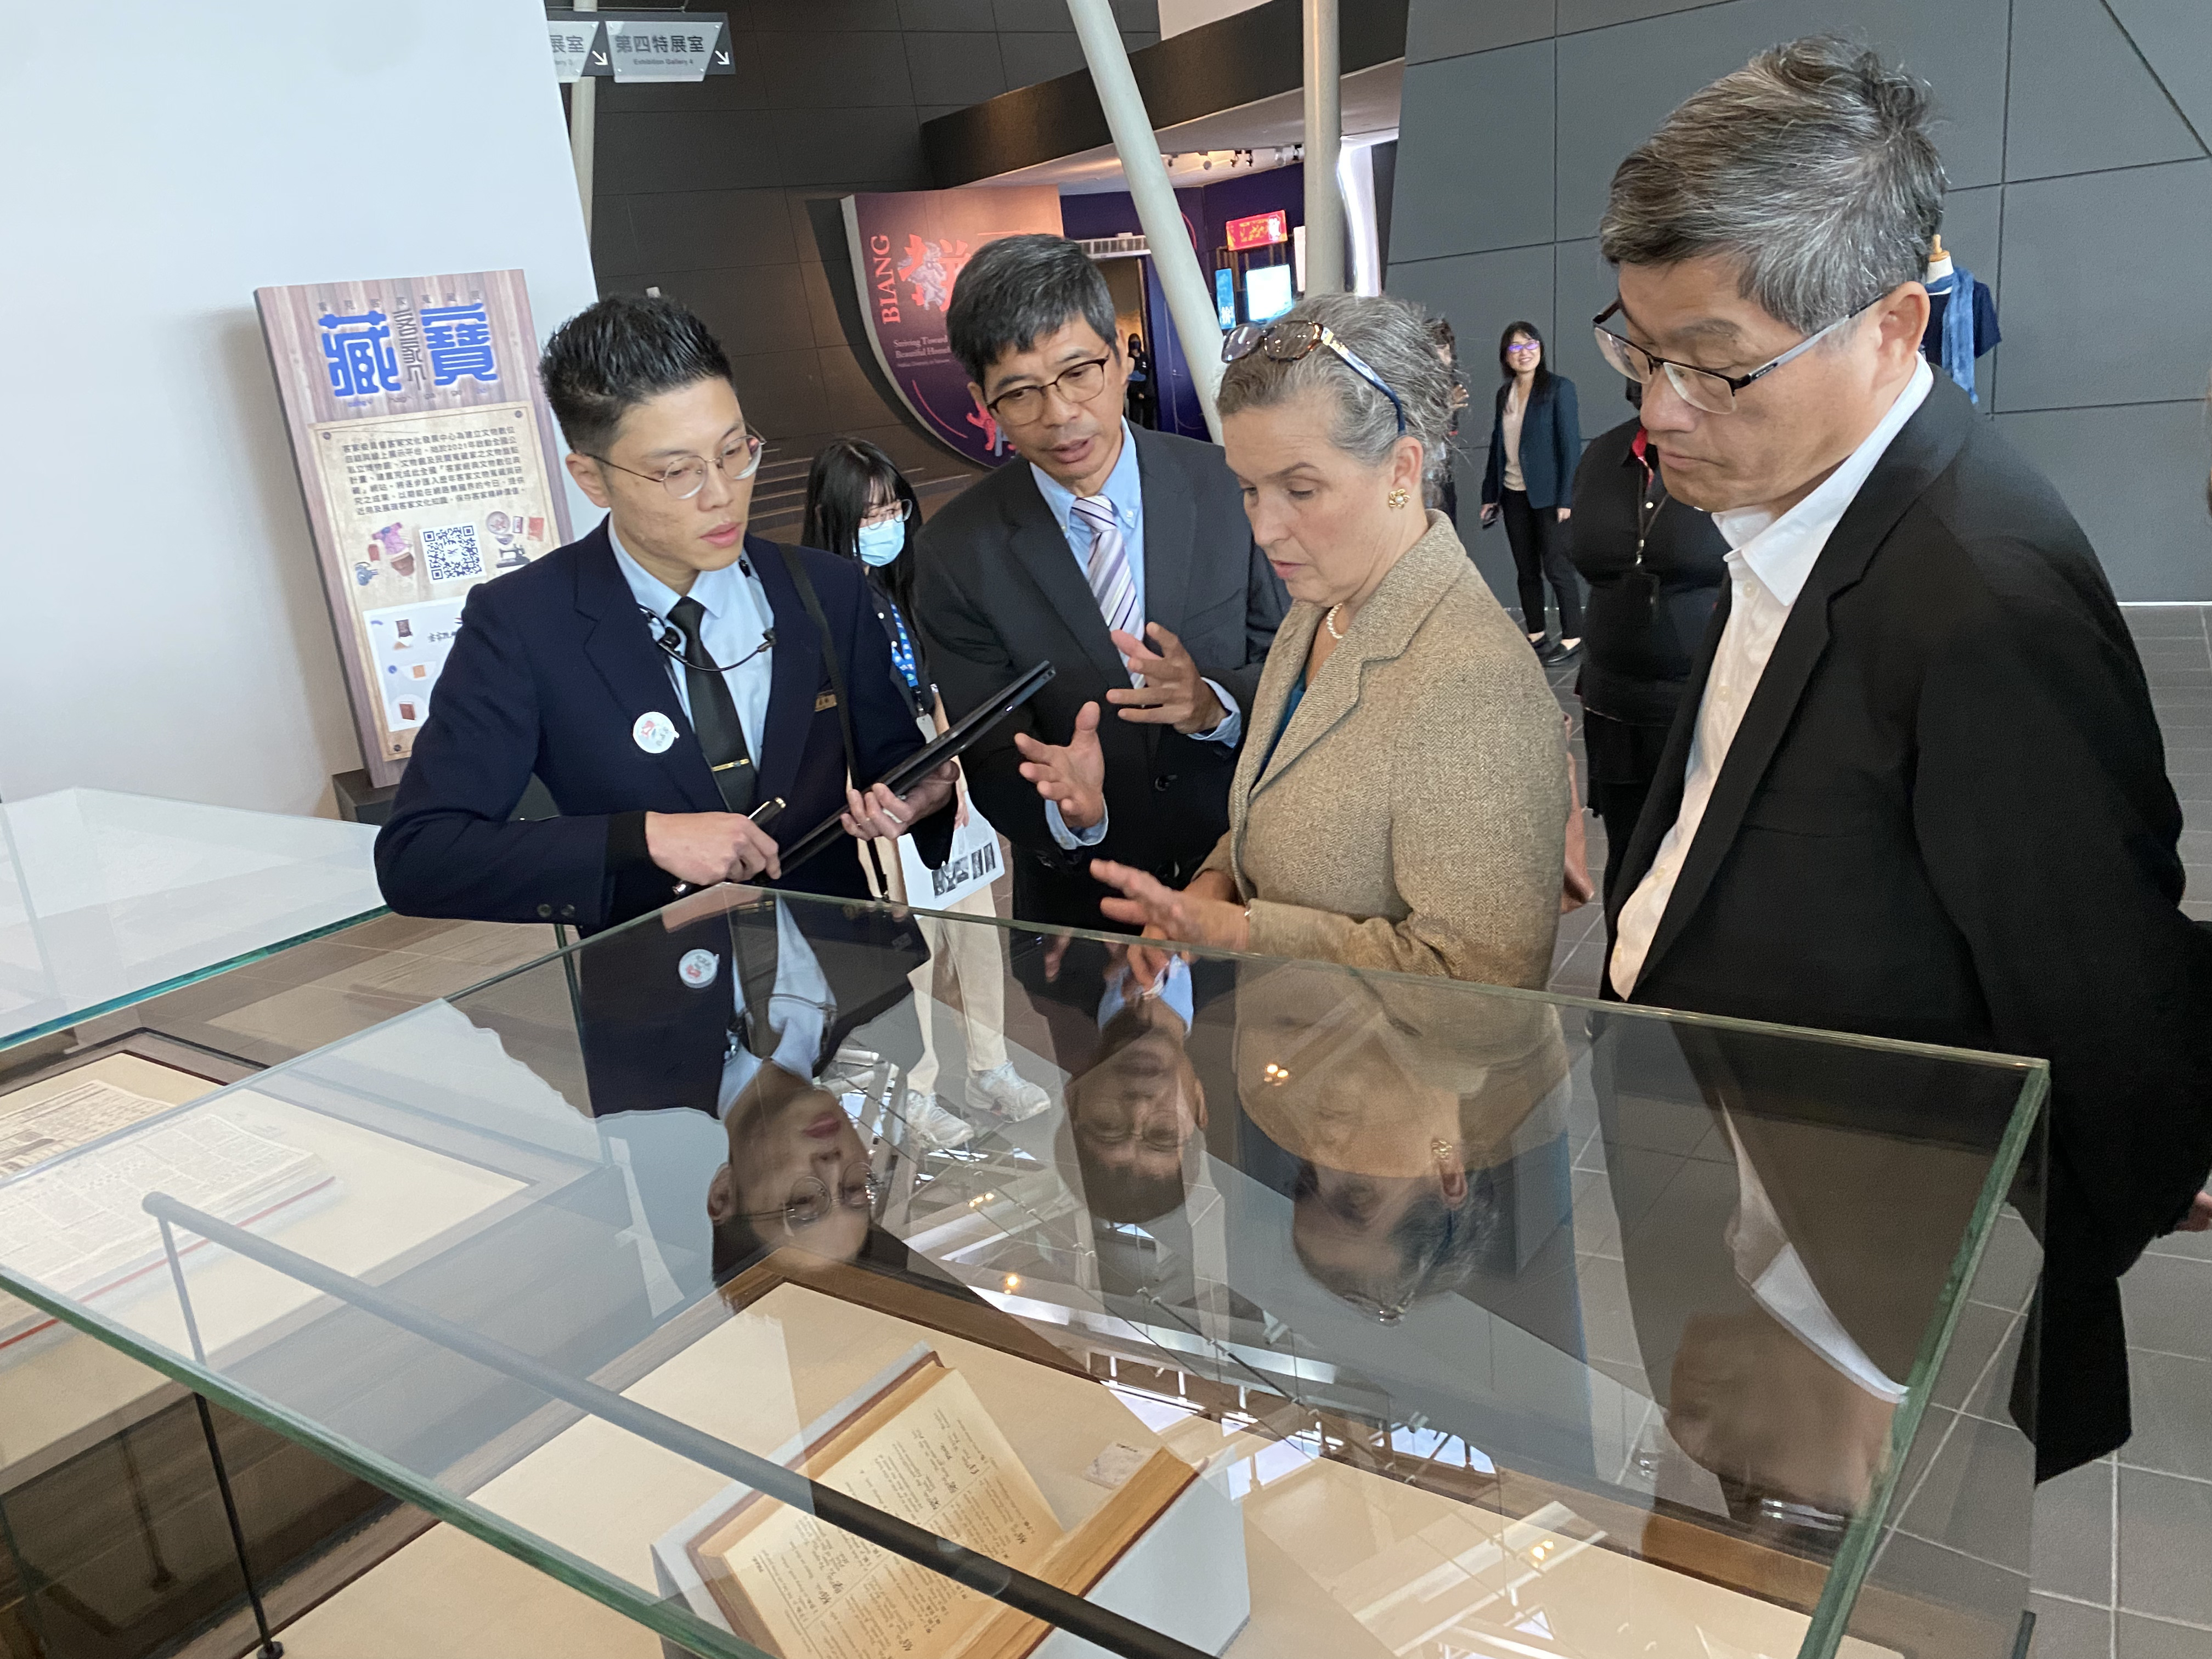 孫曉雅處長聆聽導覽人員介紹客發中心有超過百年歷史的「客英字典」及「黃娟手稿」等典藏文物